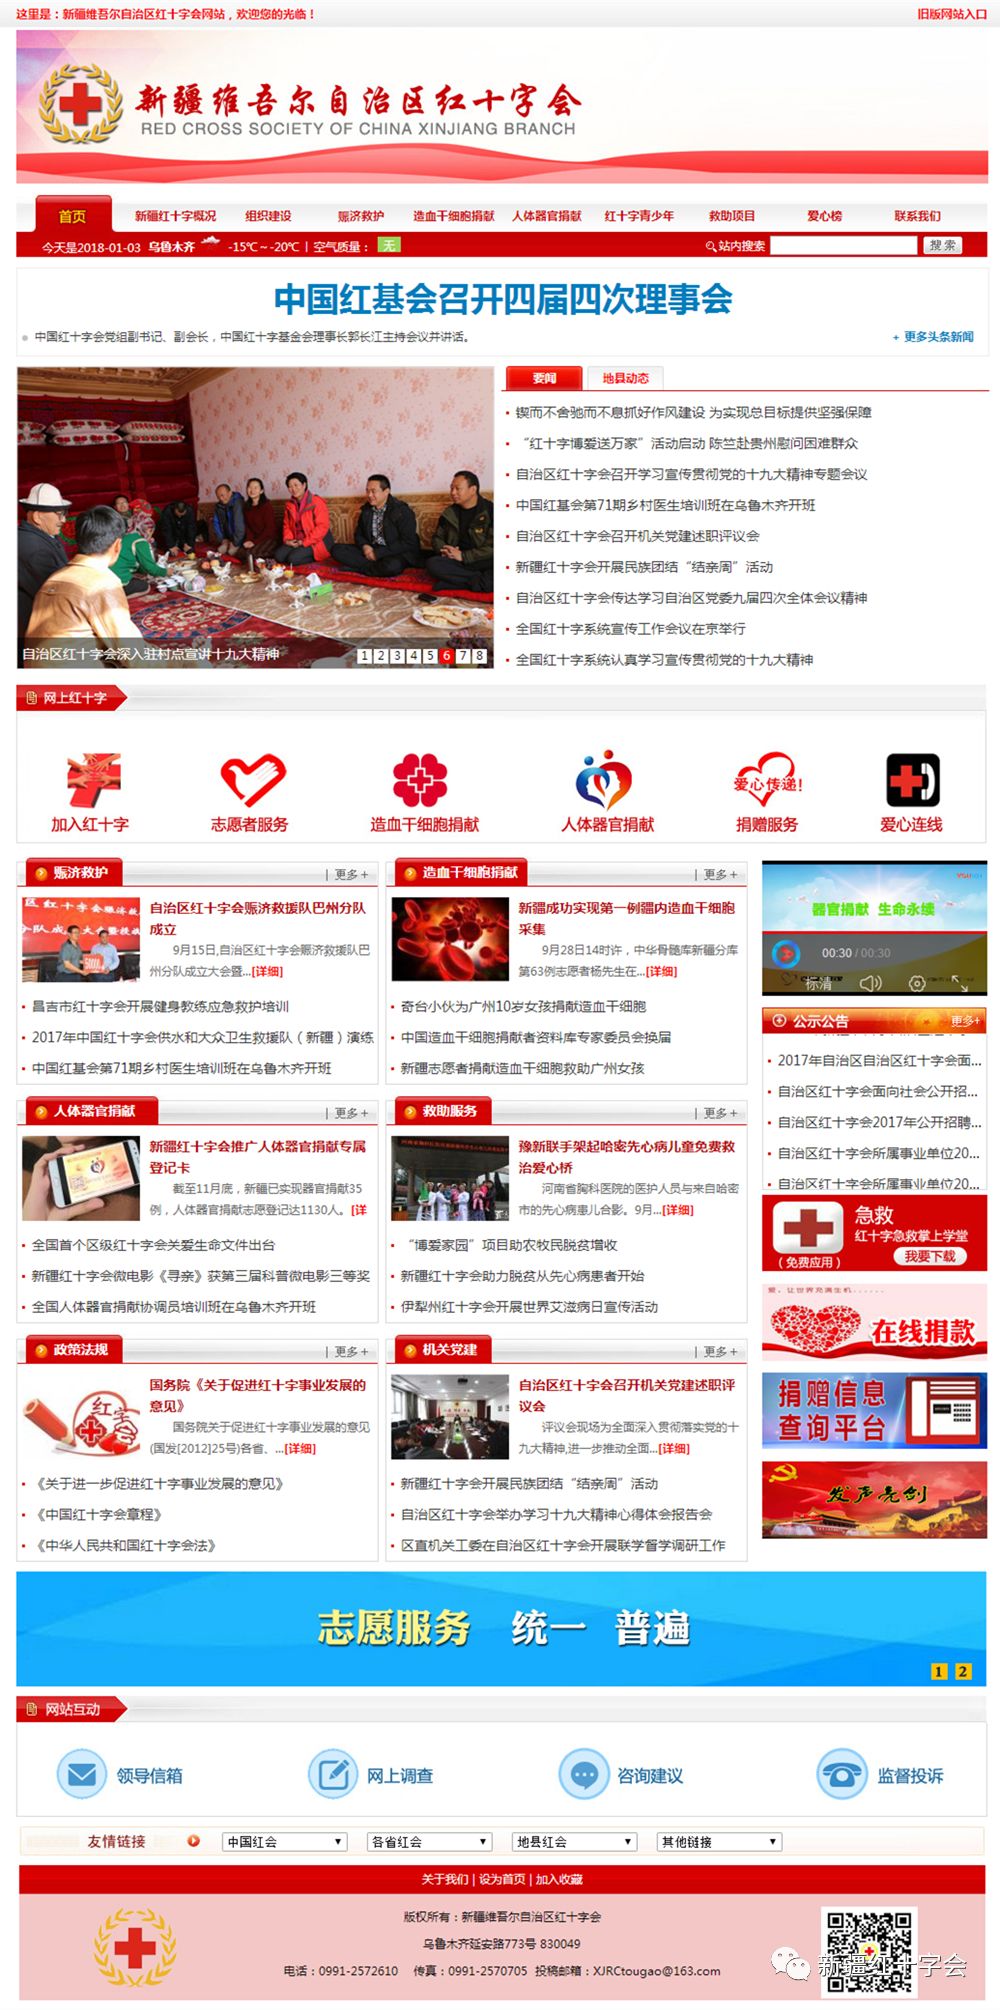 所有人,新疆红十字会官方网站全新上线,让便捷服务无处不在 